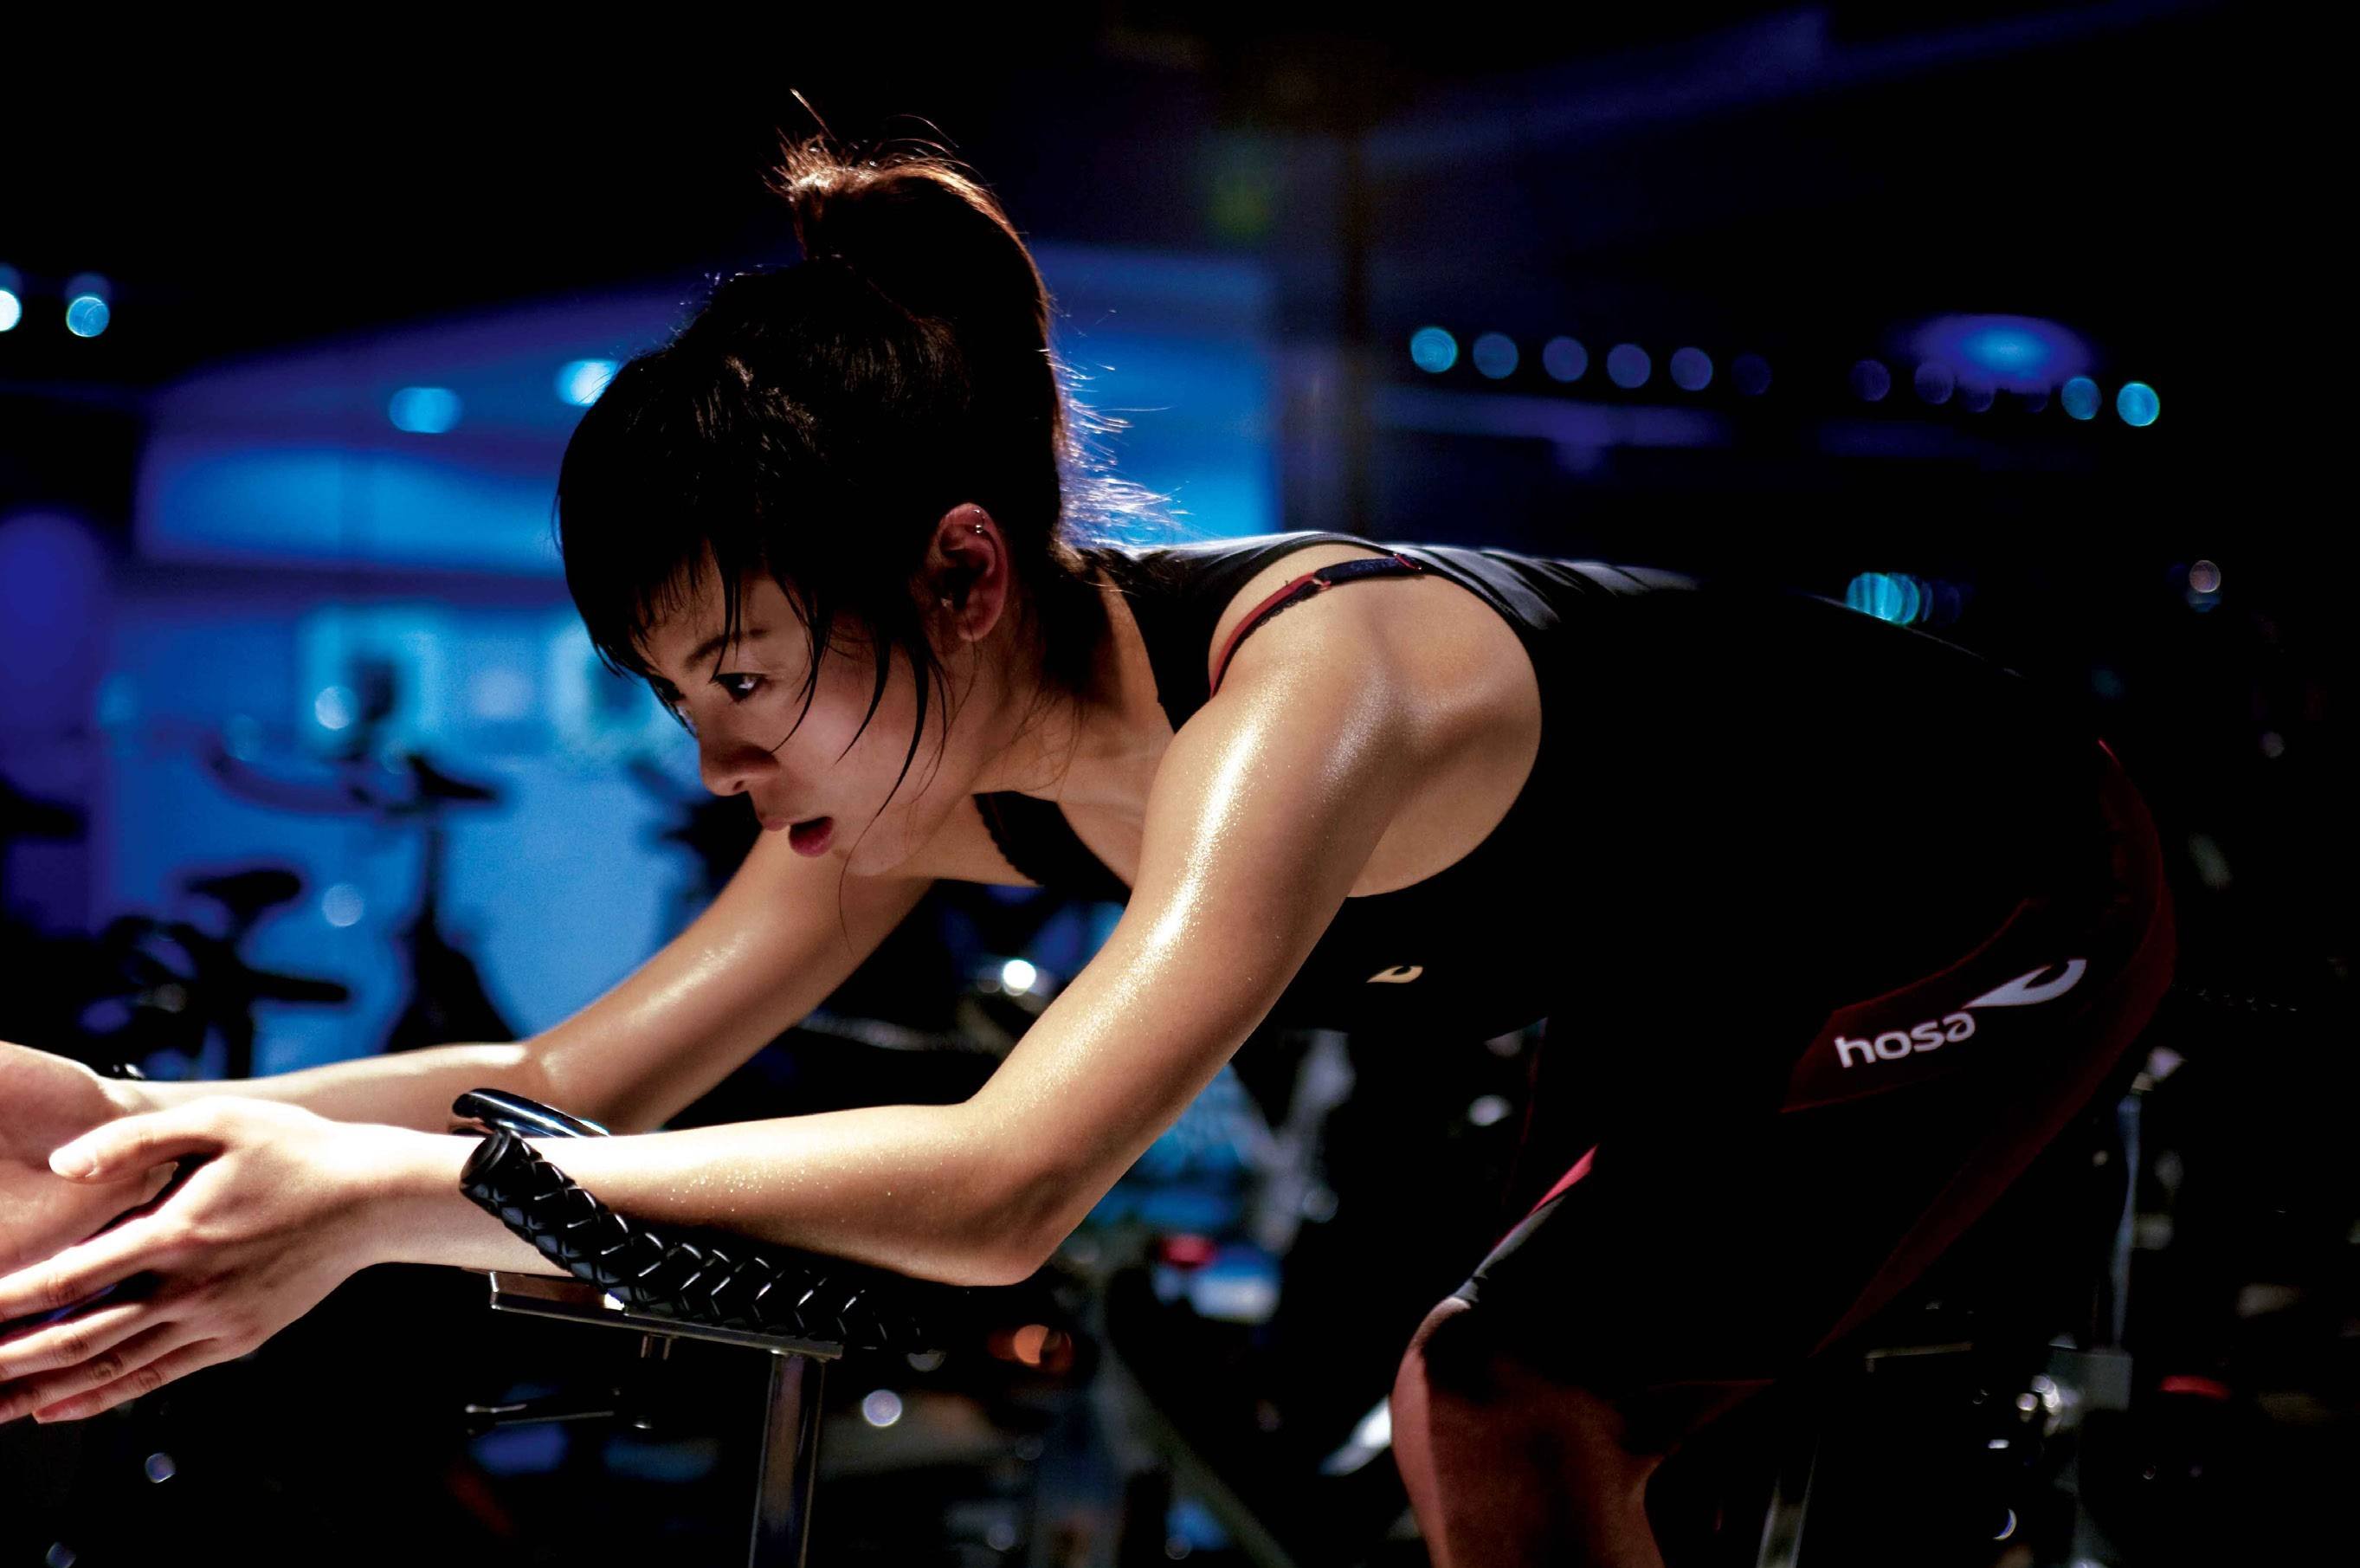 能够在健身房跟着教练一起骑动感单车的确是不错的有氧运动,也可以